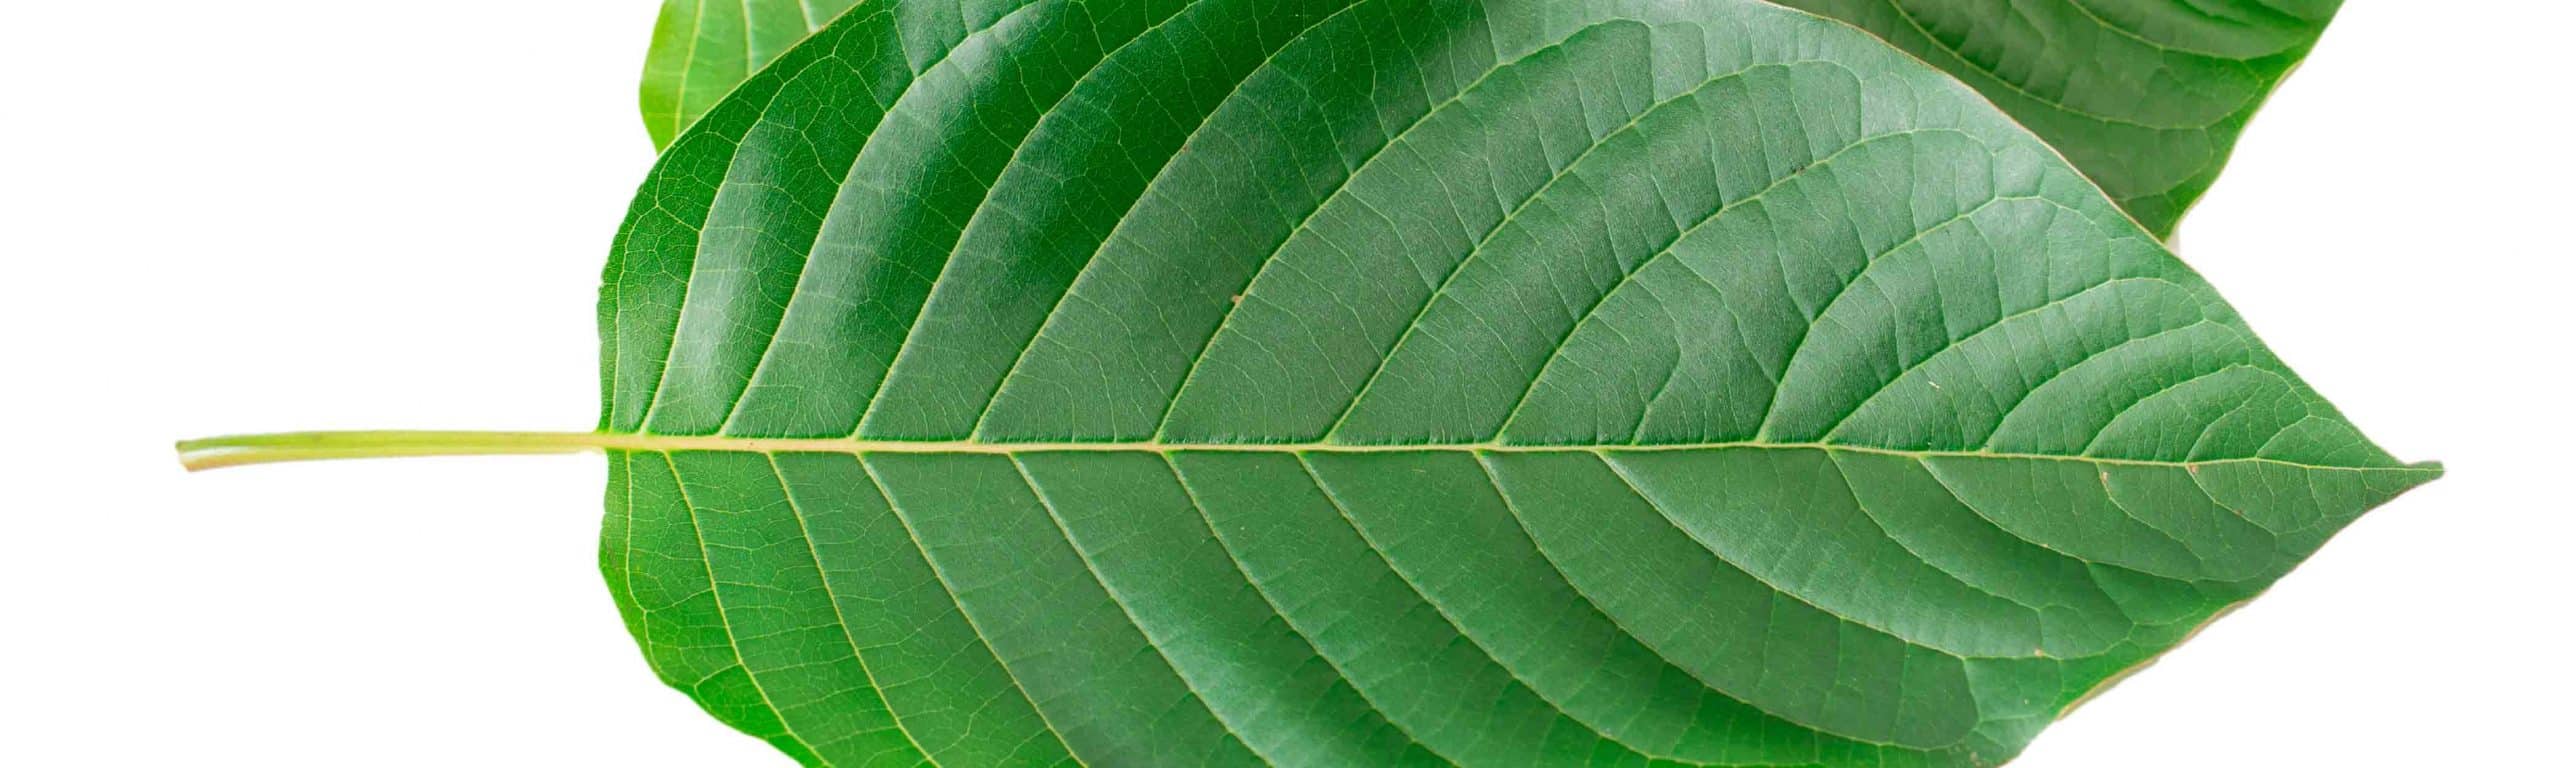 image of kratom leaves